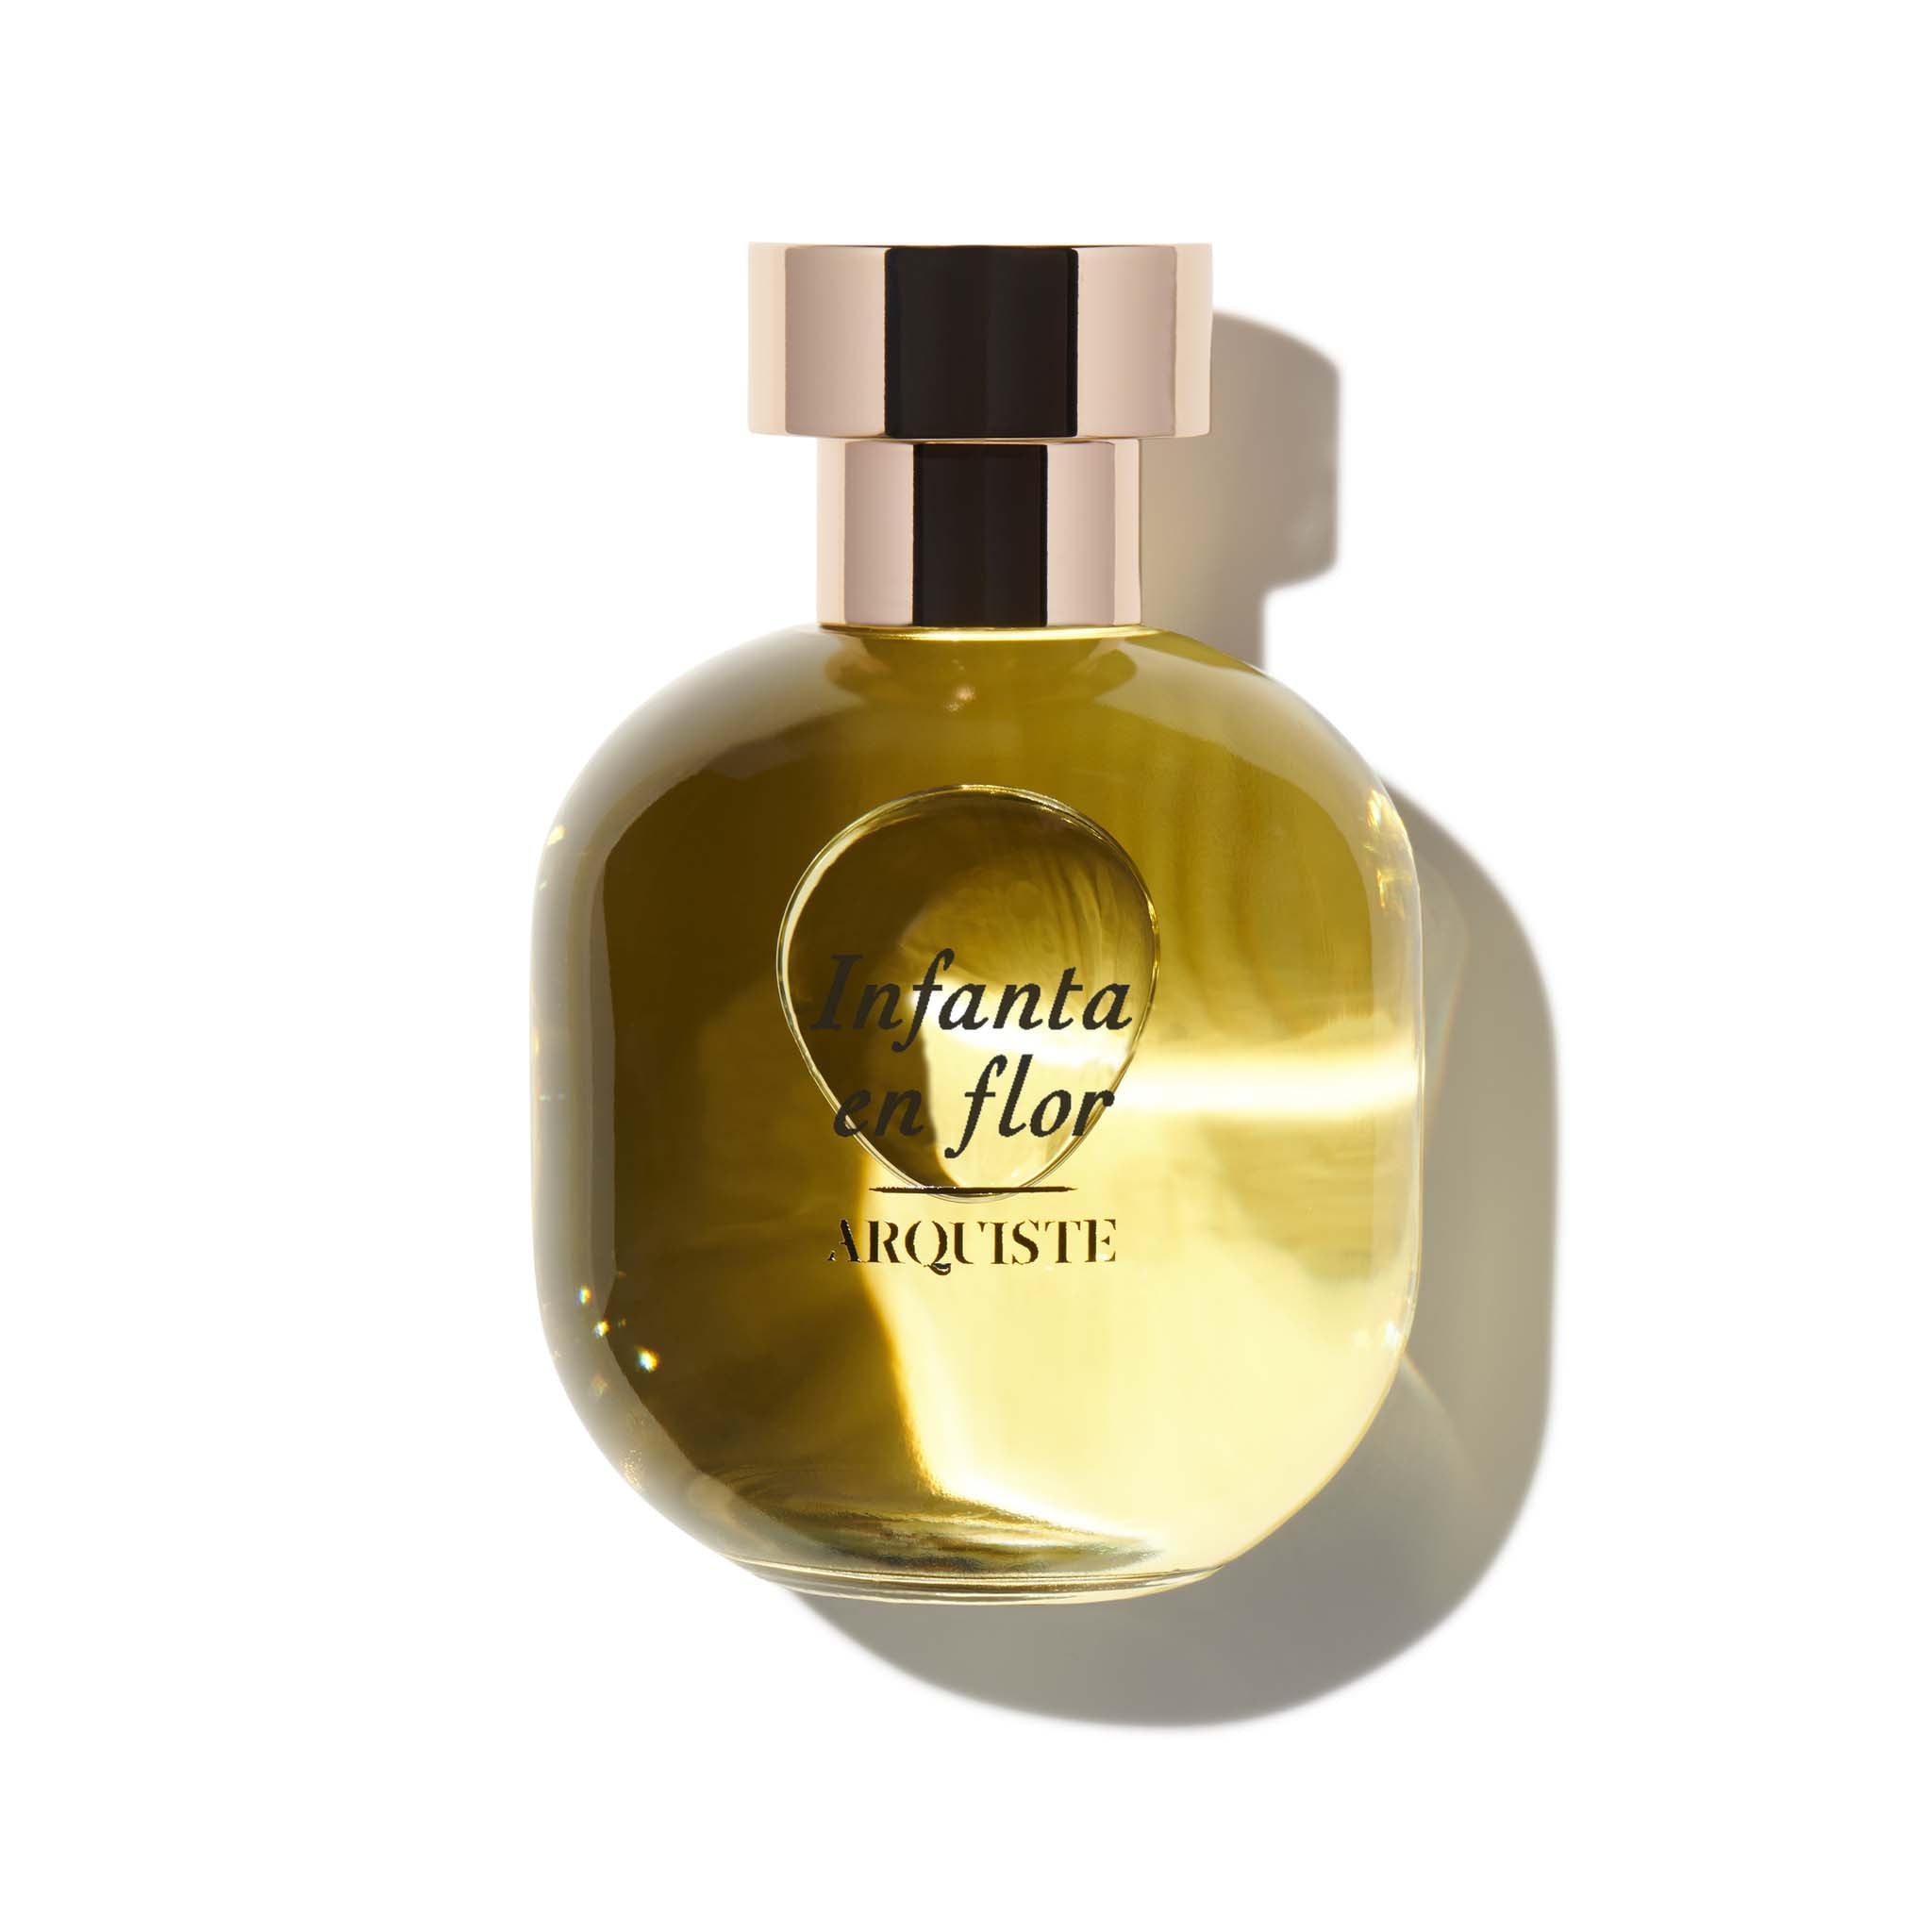 Infanta En Flor 100ml Eau de Parfum Bottle by Arquiste